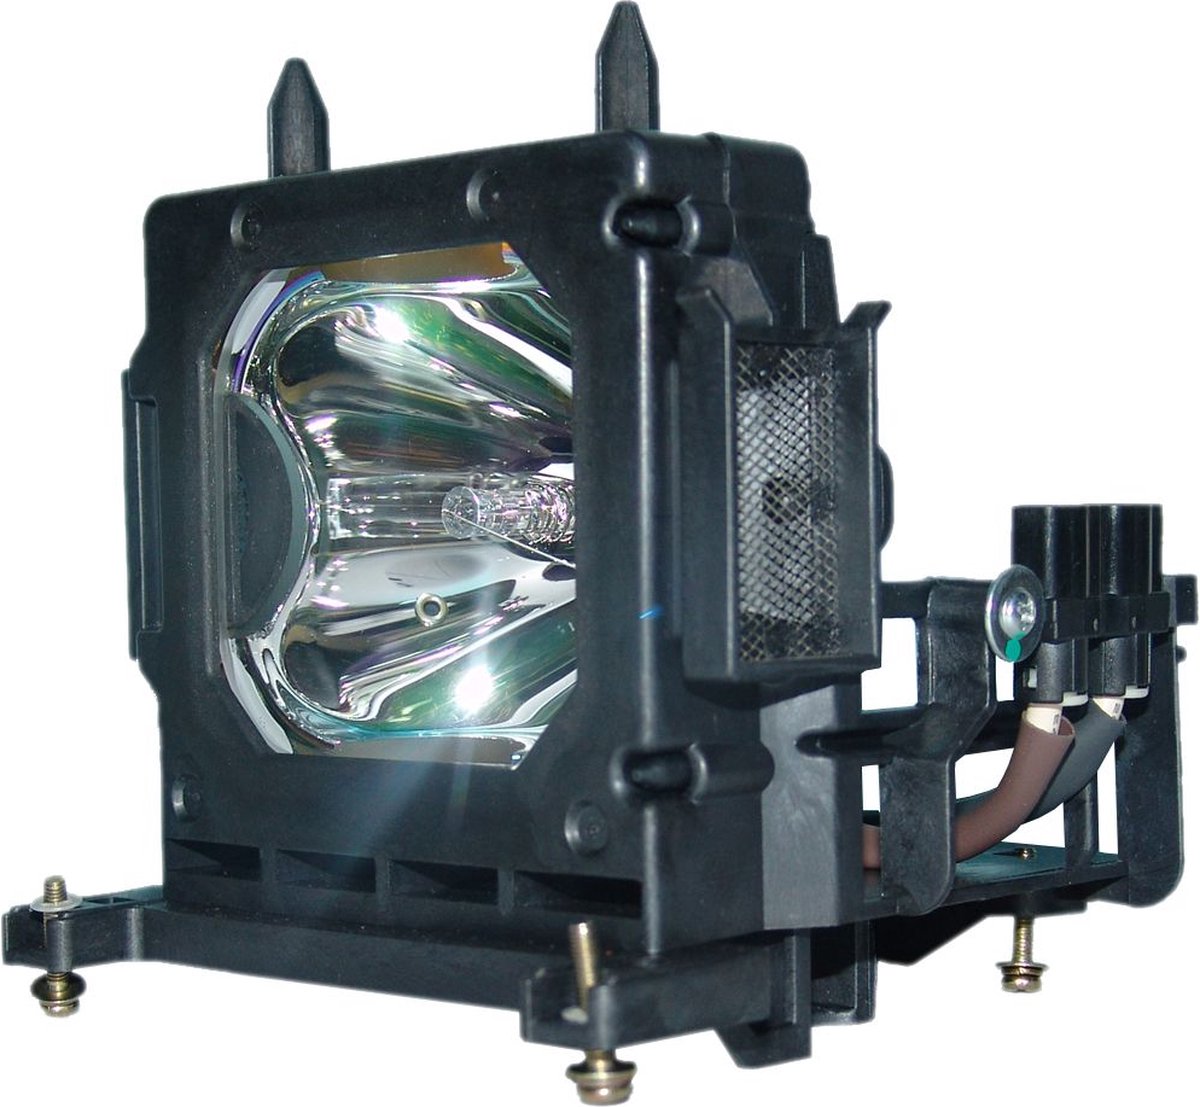 Beamerlamp geschikt voor de SONY VPL-HW20A beamer, lamp code LMP-H201. Bevat originele UHP lamp, prestaties gelijk aan origineel.